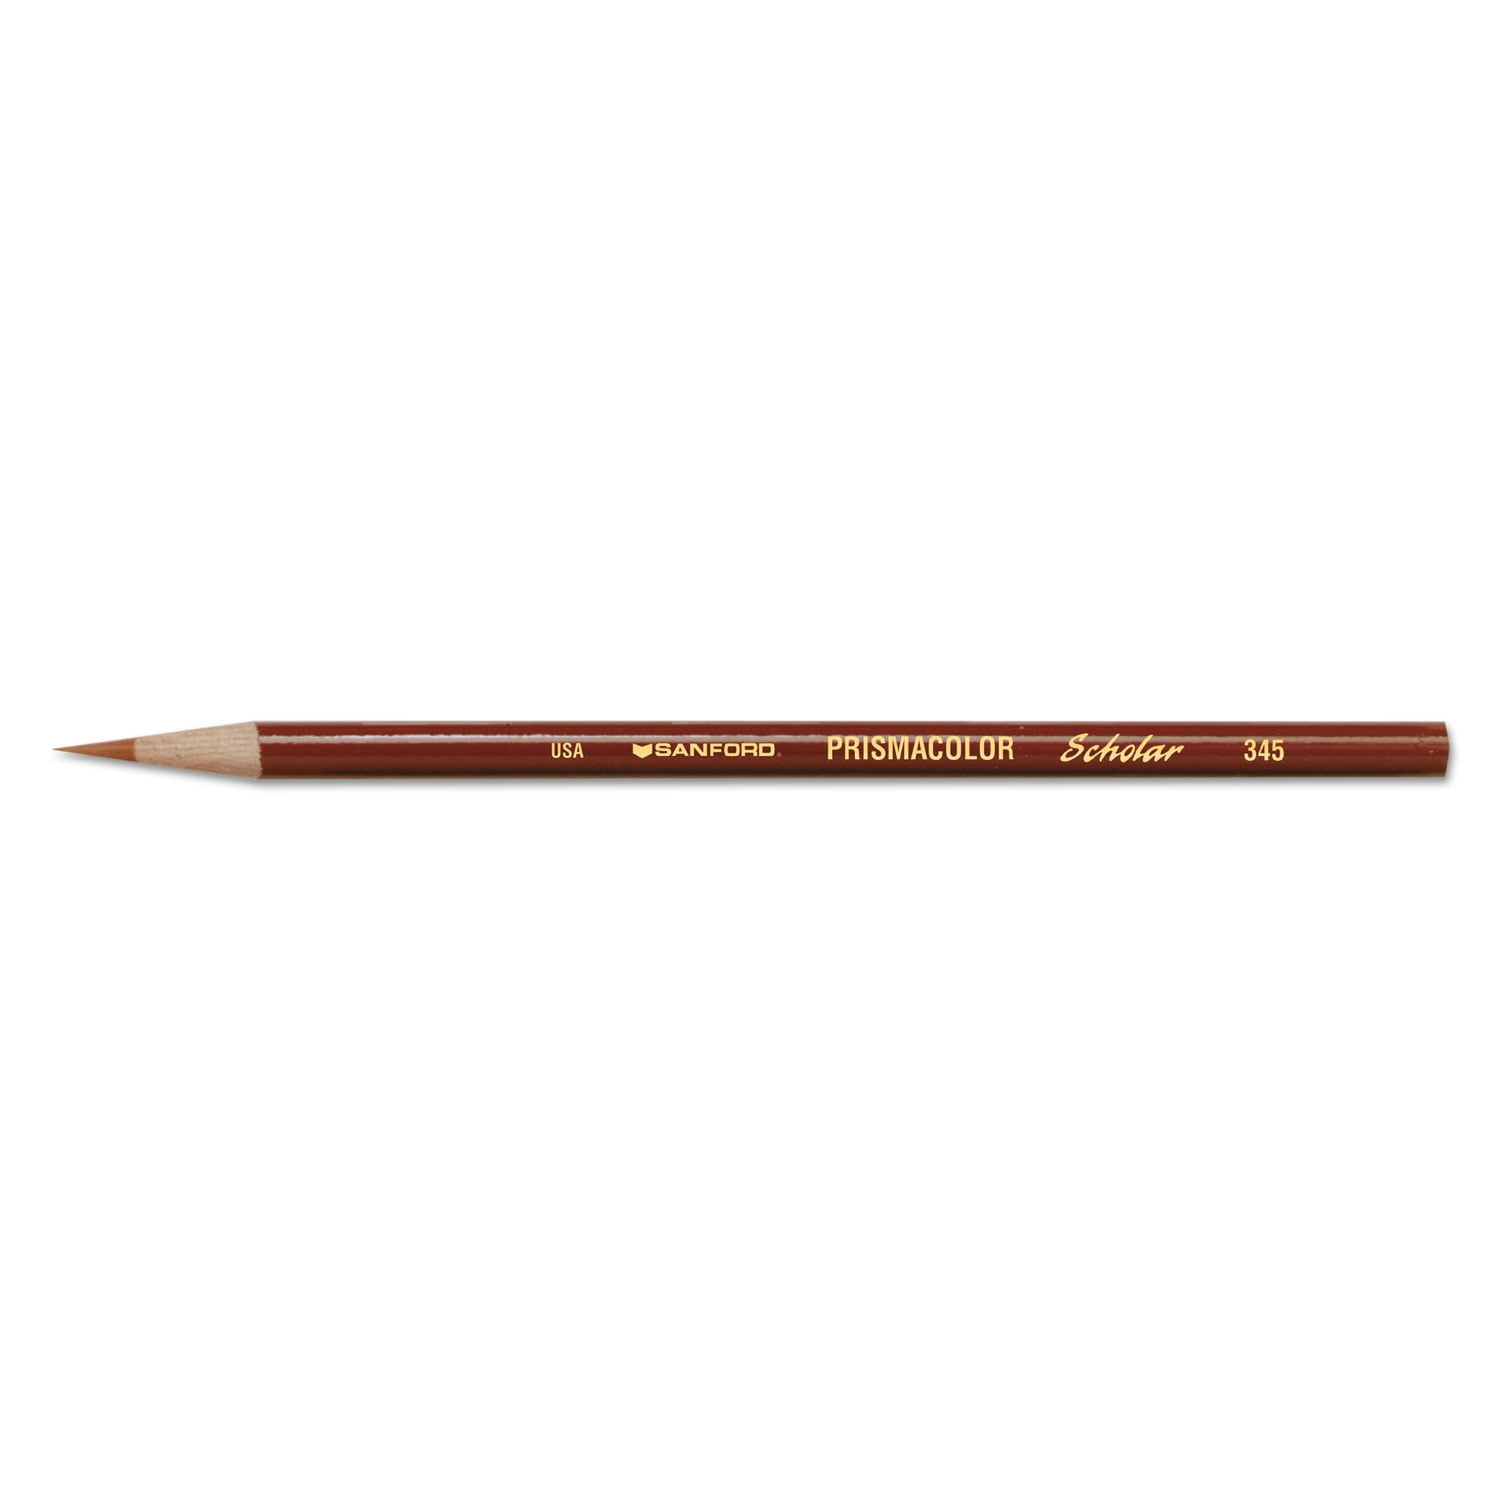 Prismacolor Scholar Art Pencil Set of 48 - 9587543